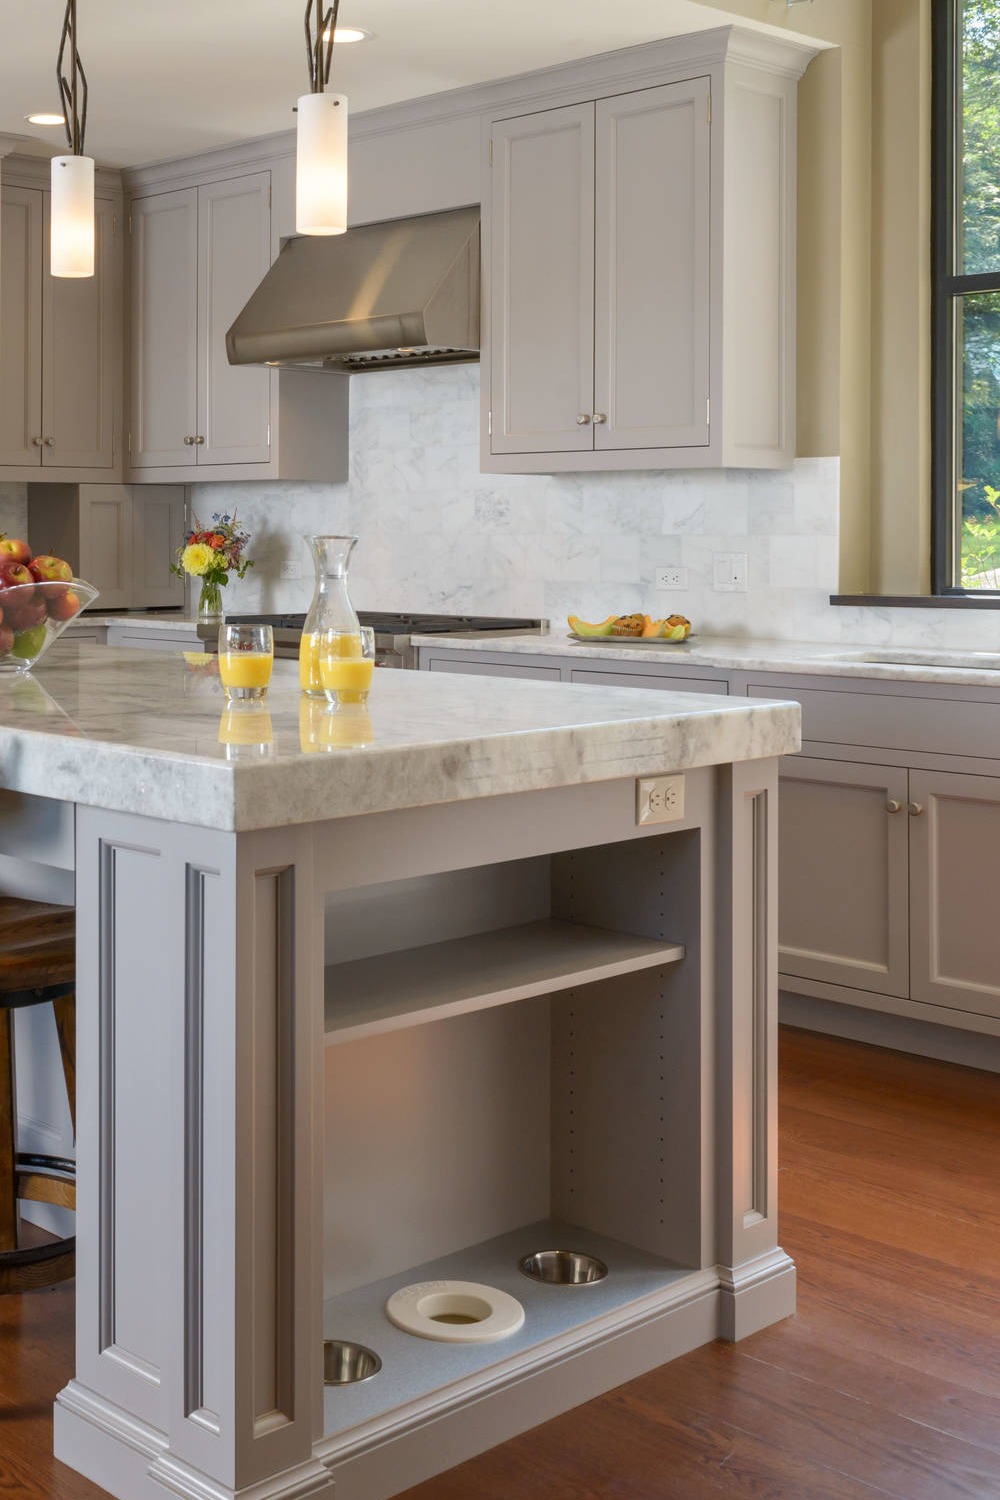 Light Gray Cabinets White Marble Backsplash Tile Quartzite Countertops Dark Hardwood Floor